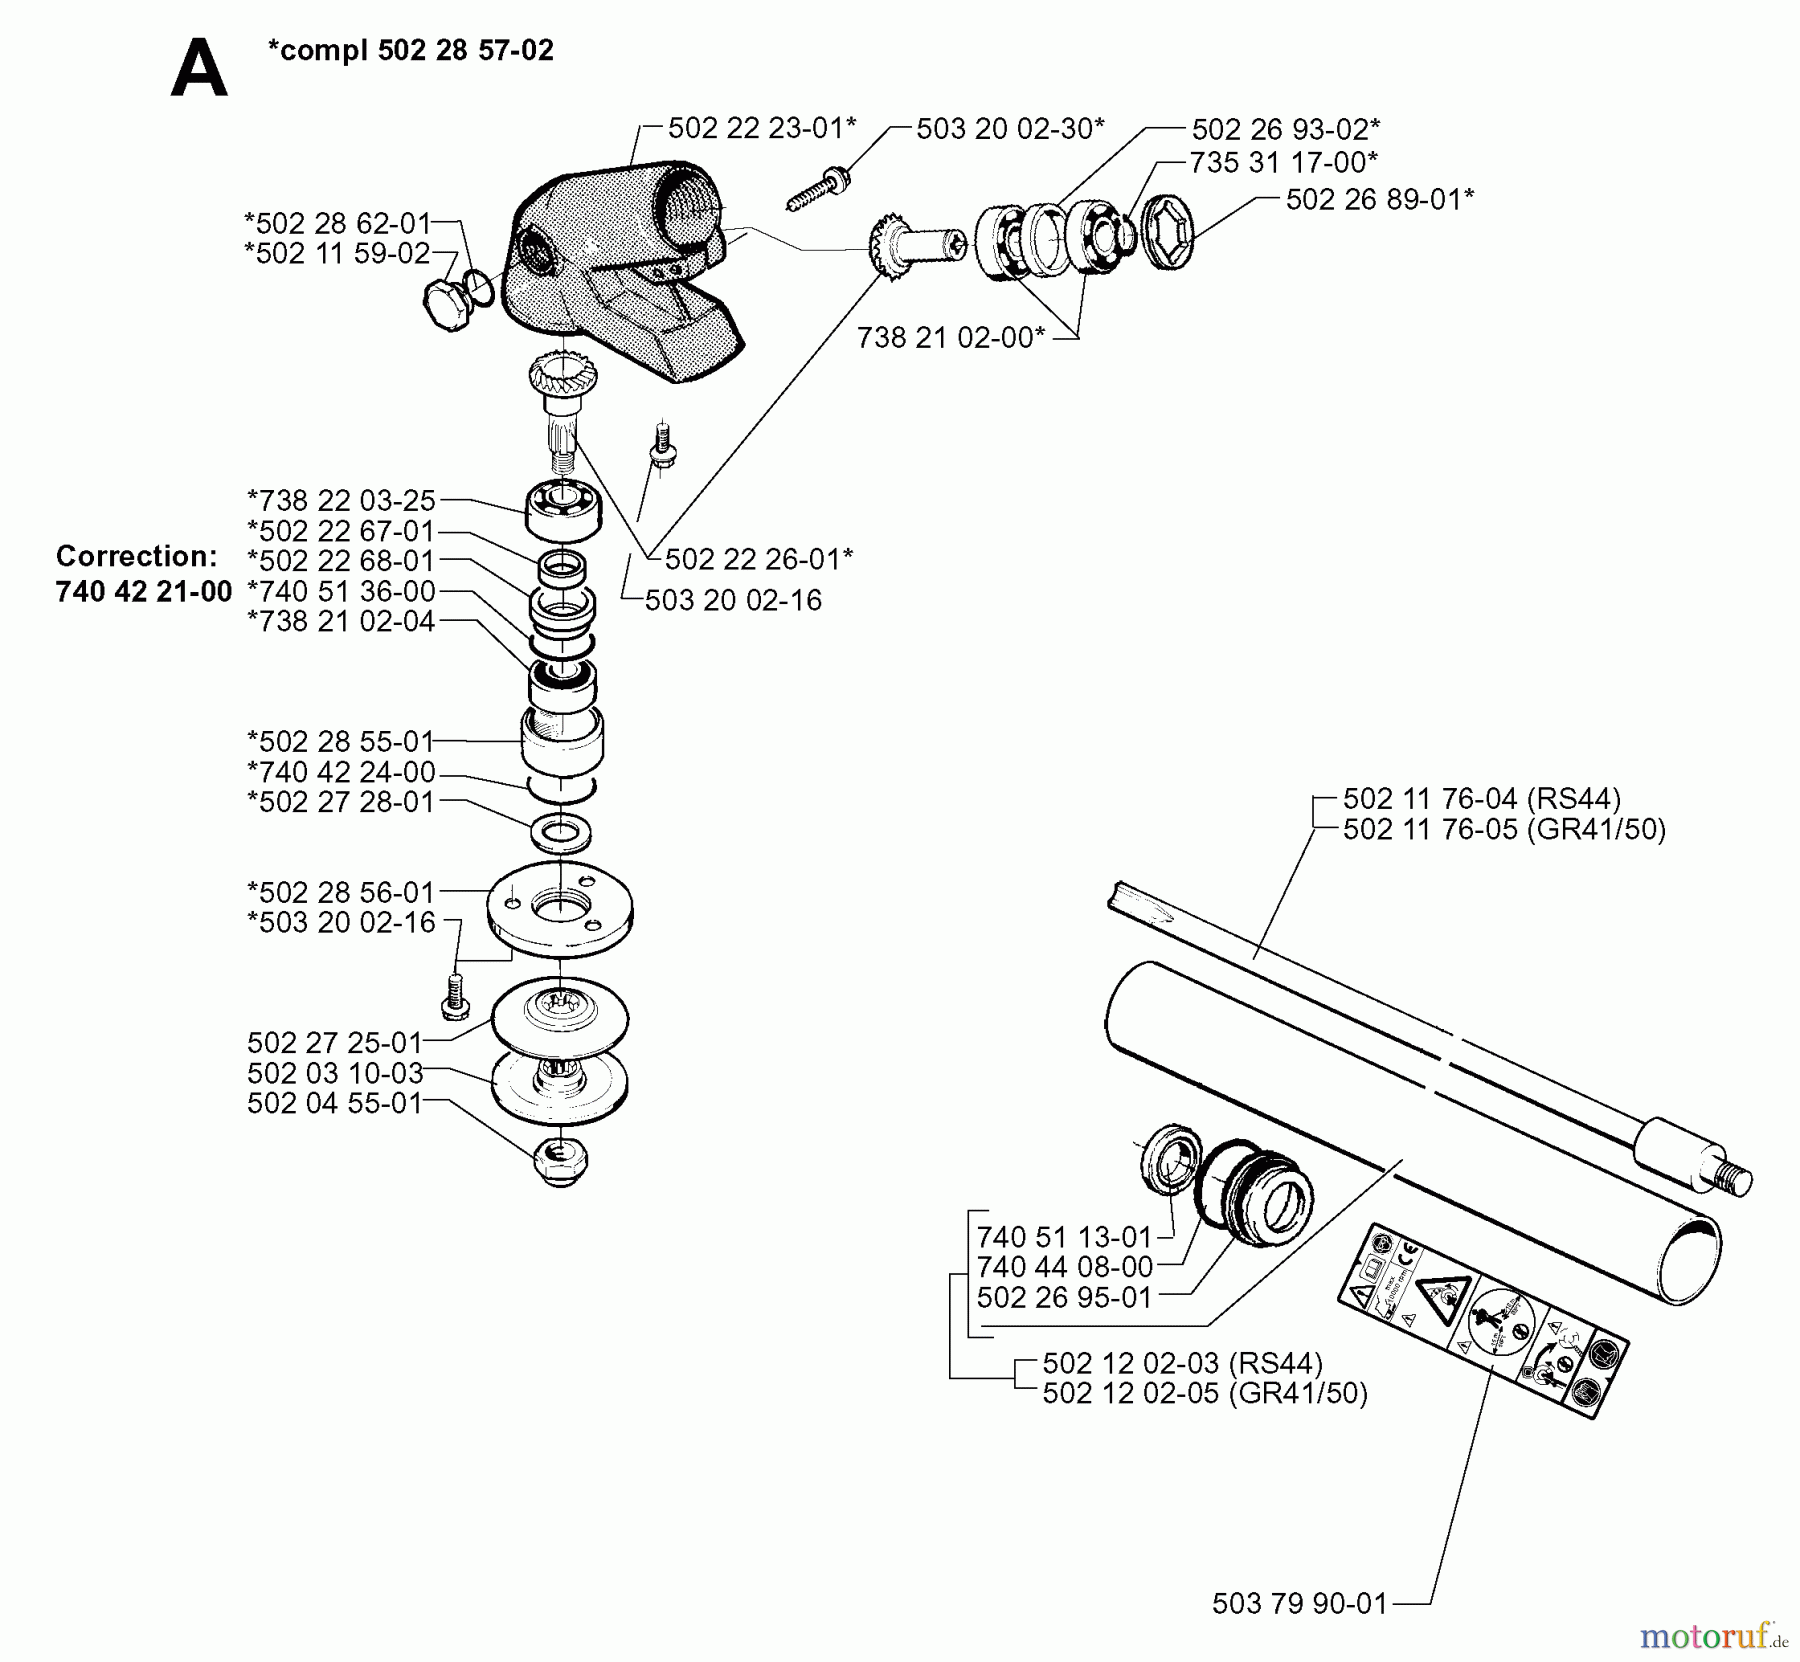  Jonsered Motorsensen, Trimmer GR41 - Jonsered String/Brush Trimmer (1998-06) BEVEL GEAR SHAFT